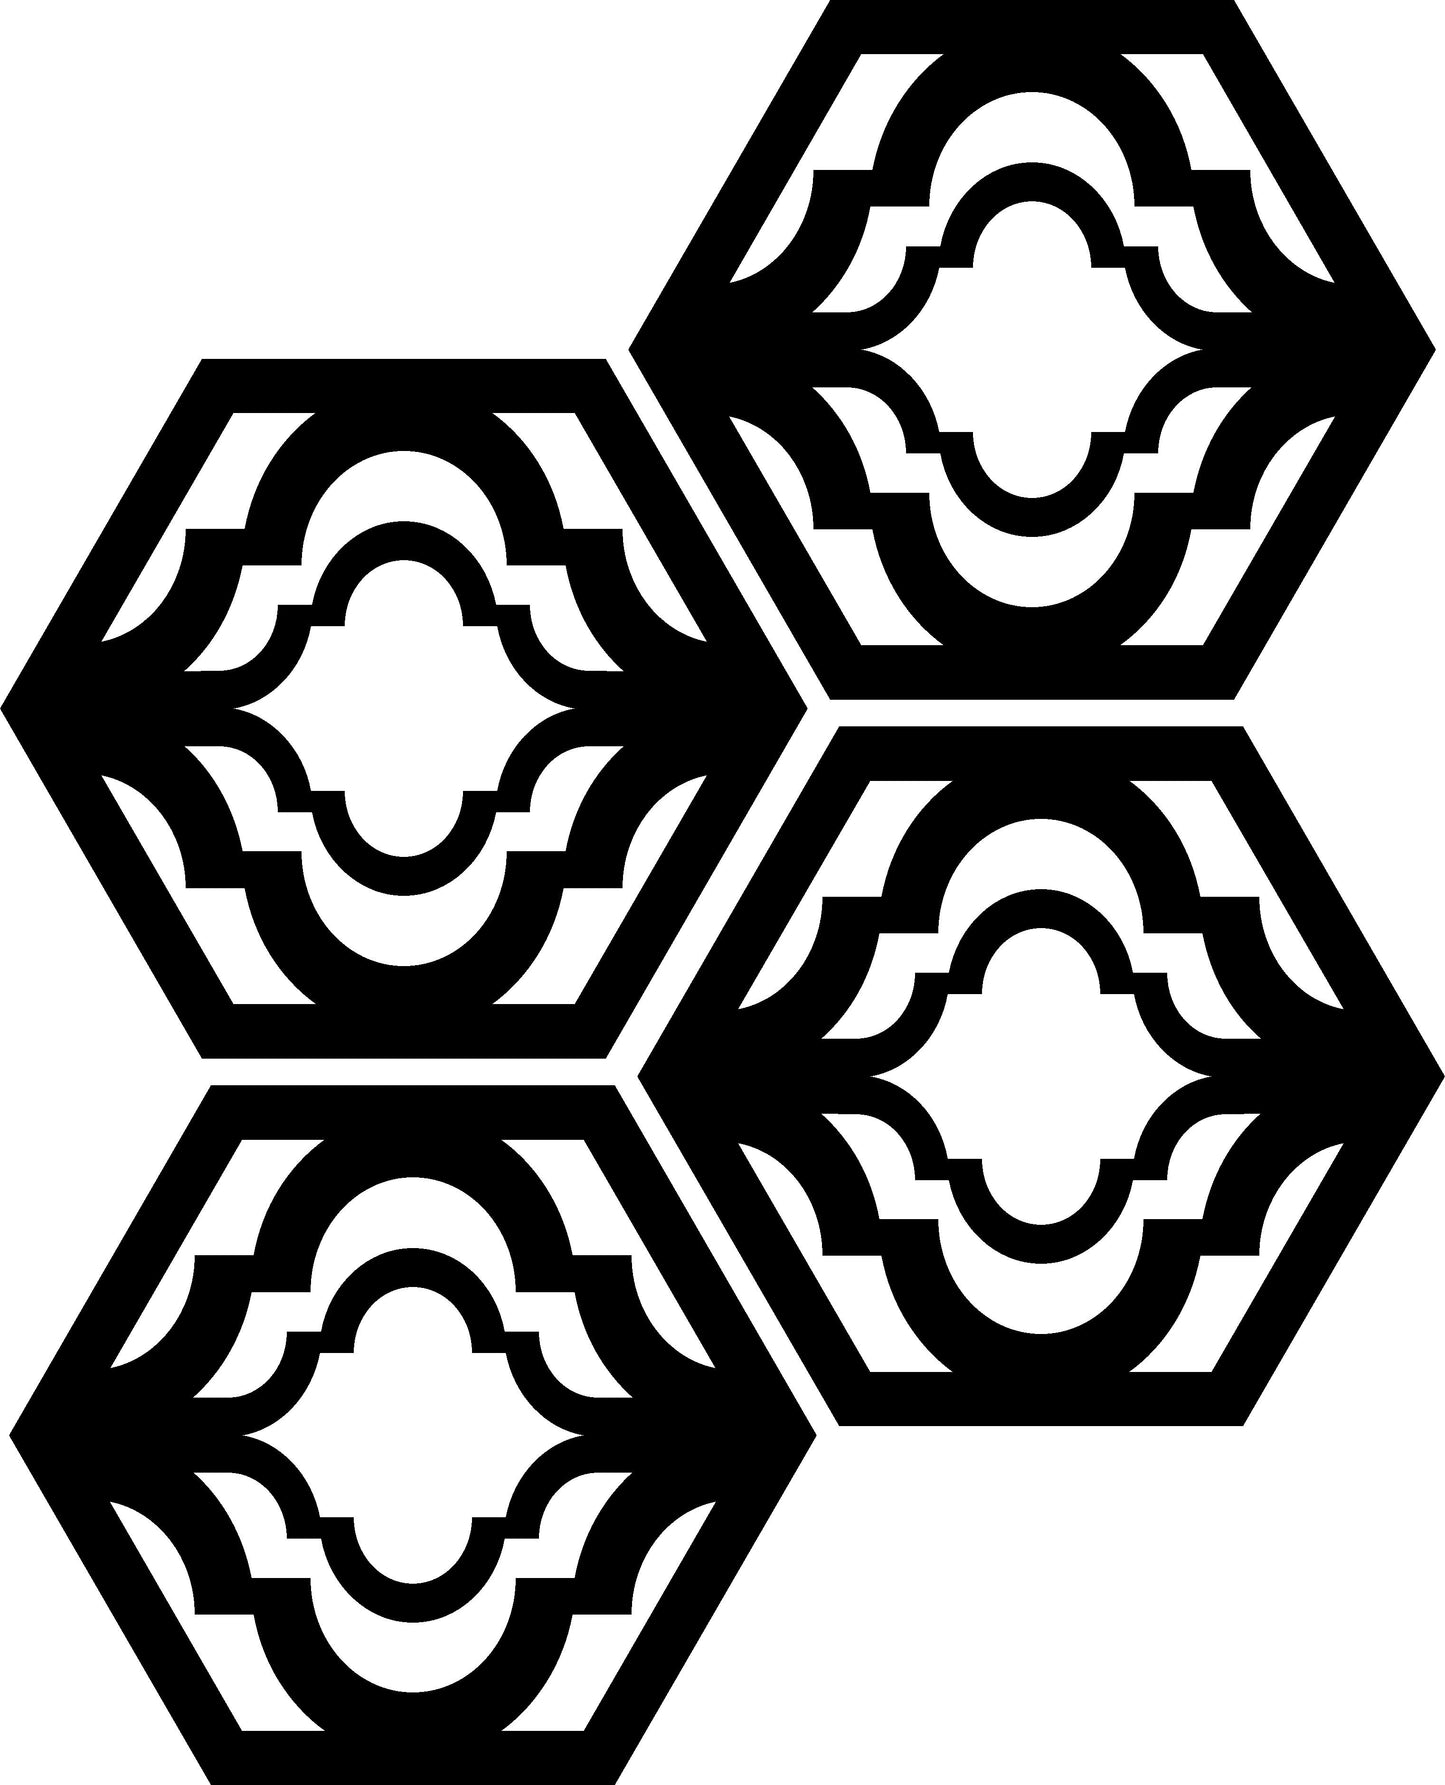 Hexagonal Design 2 (Medium)